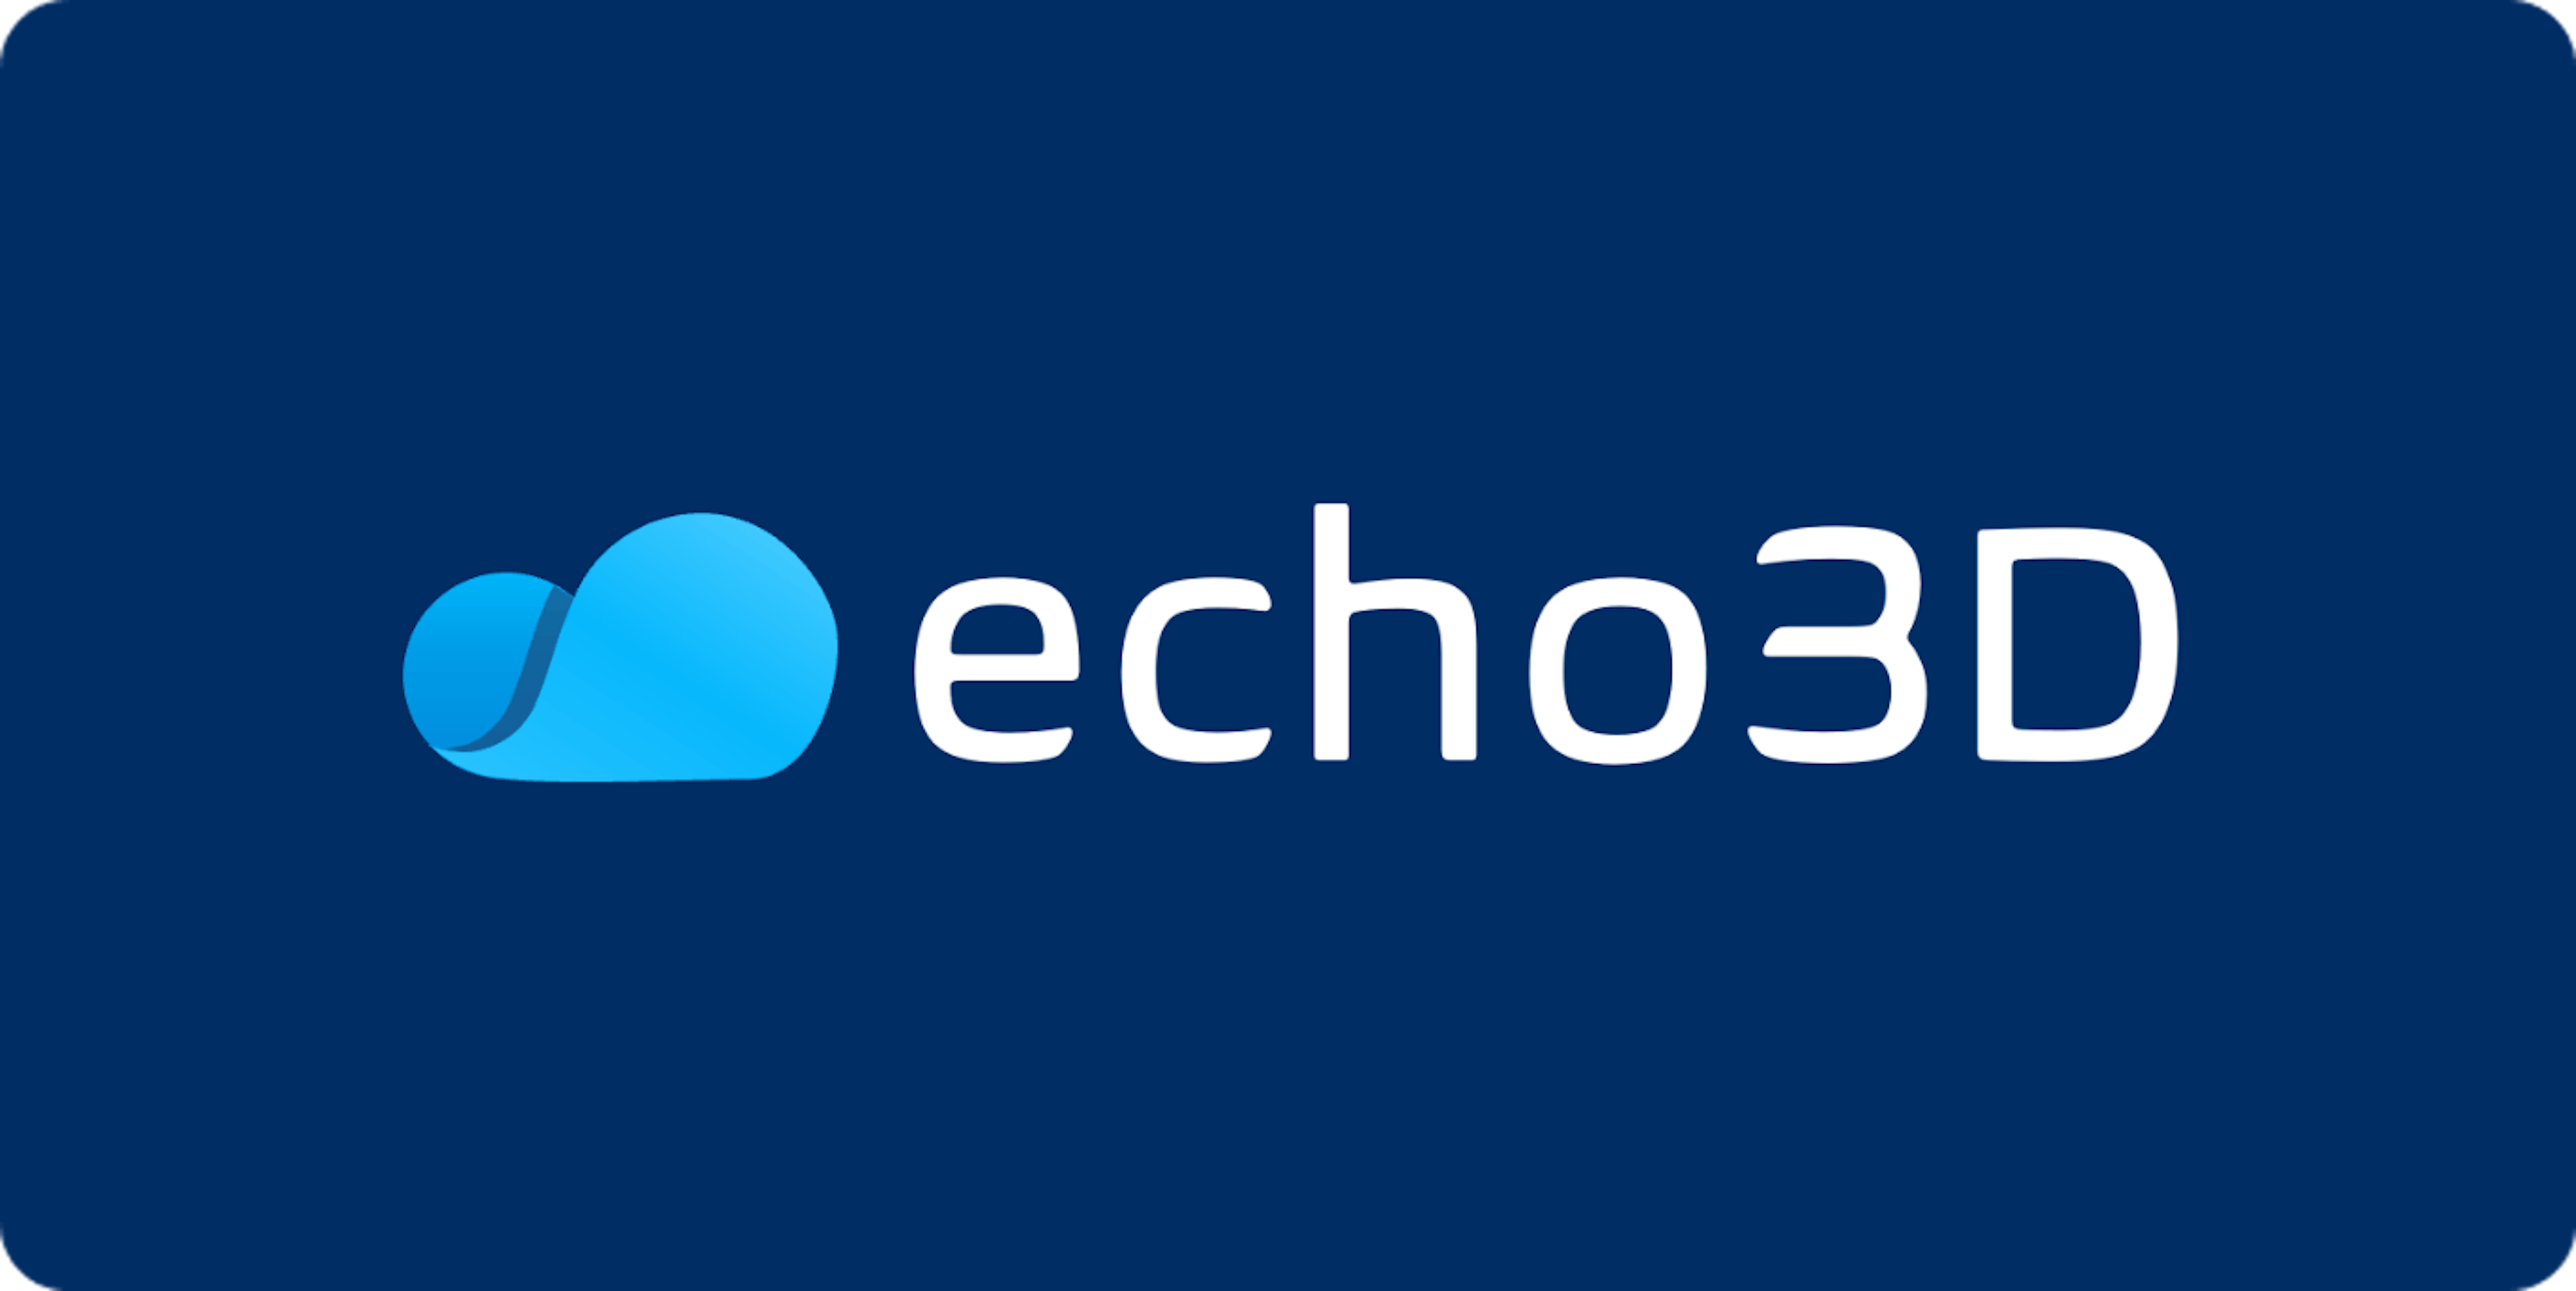 correo electrónico echo3d